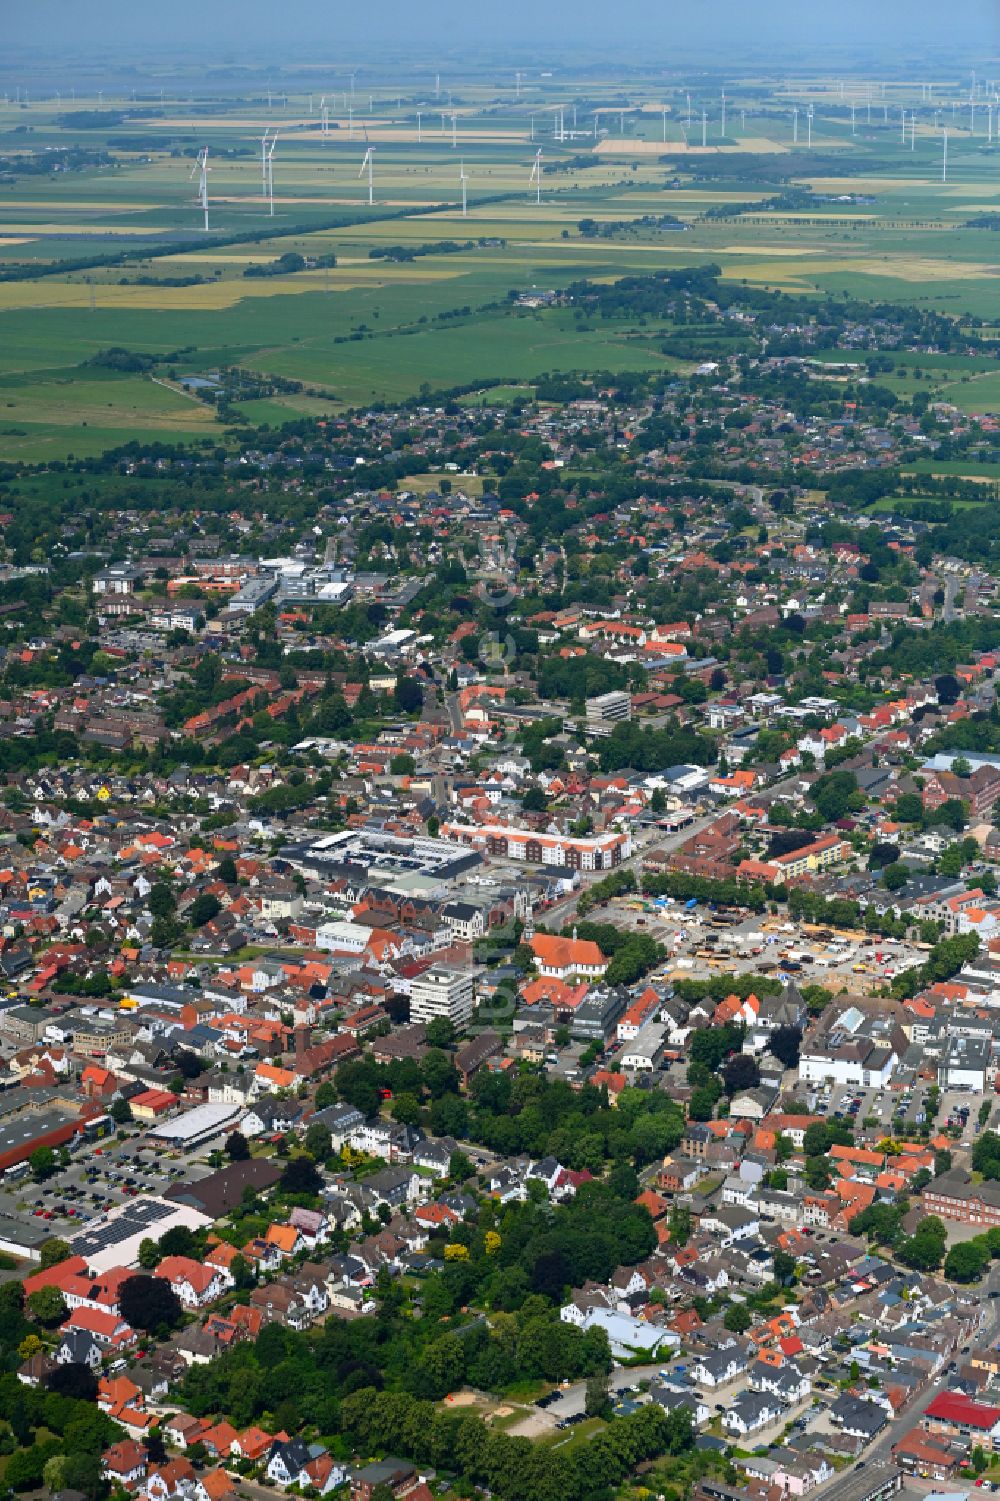 Luftaufnahme Heide - Stadtzentrum im Innenstadtbereich in Heide im Bundesland Schleswig-Holstein, Deutschland